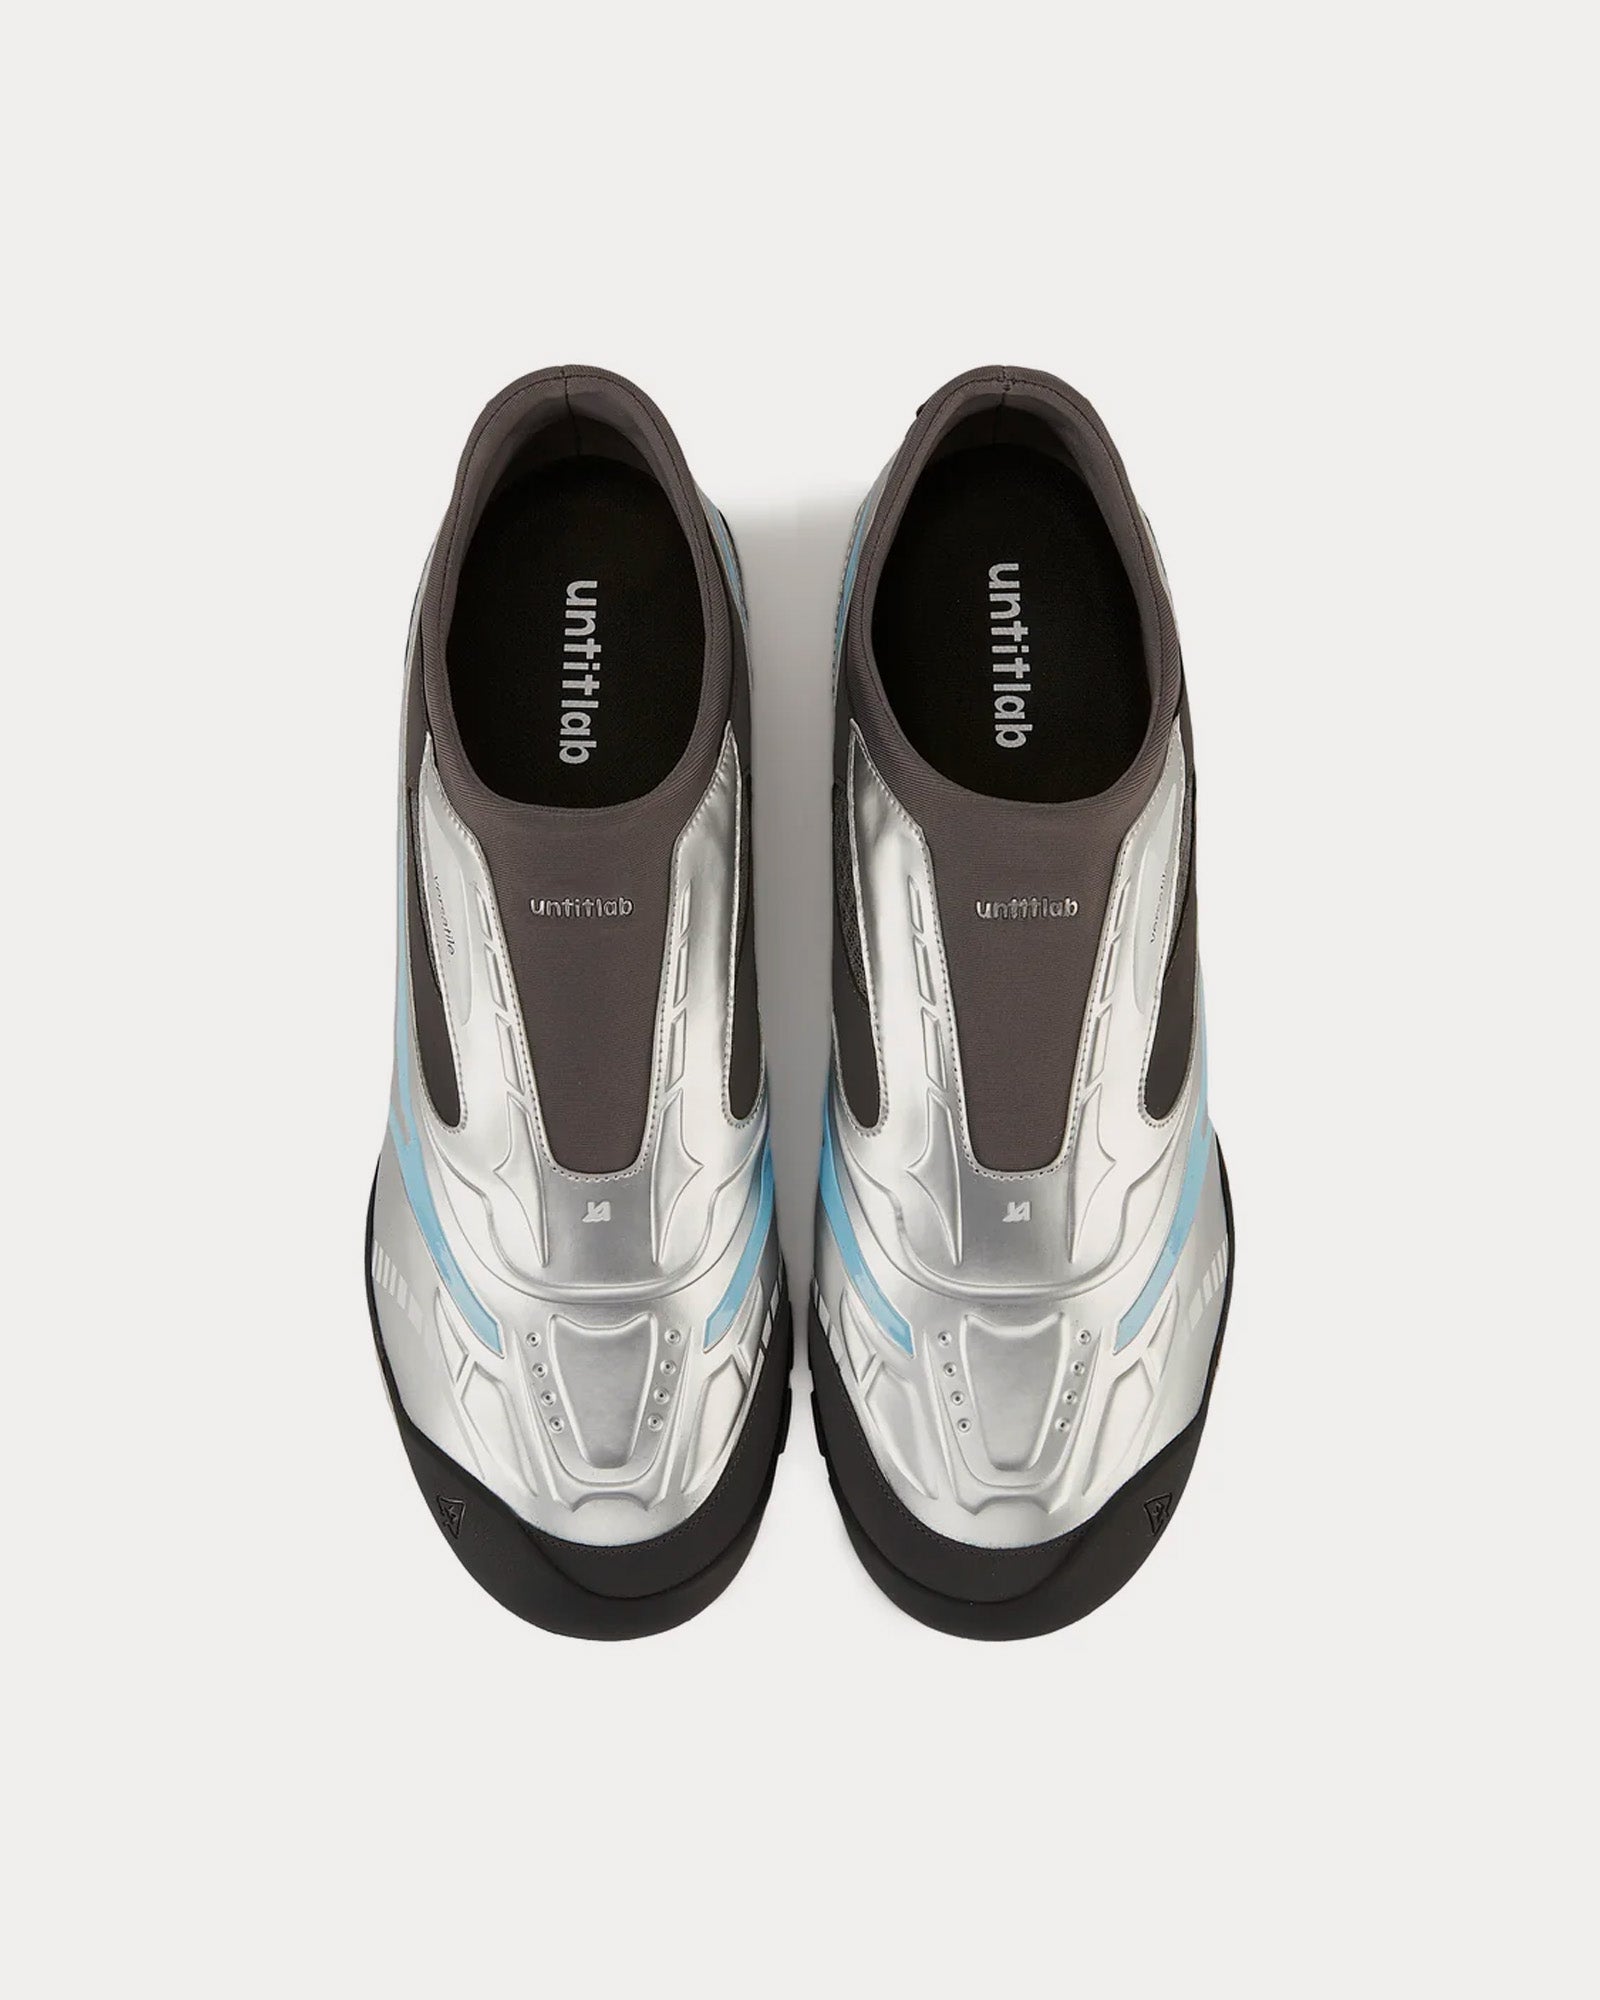 Untitlab - Swift Trek Silver Slip On Sneakers